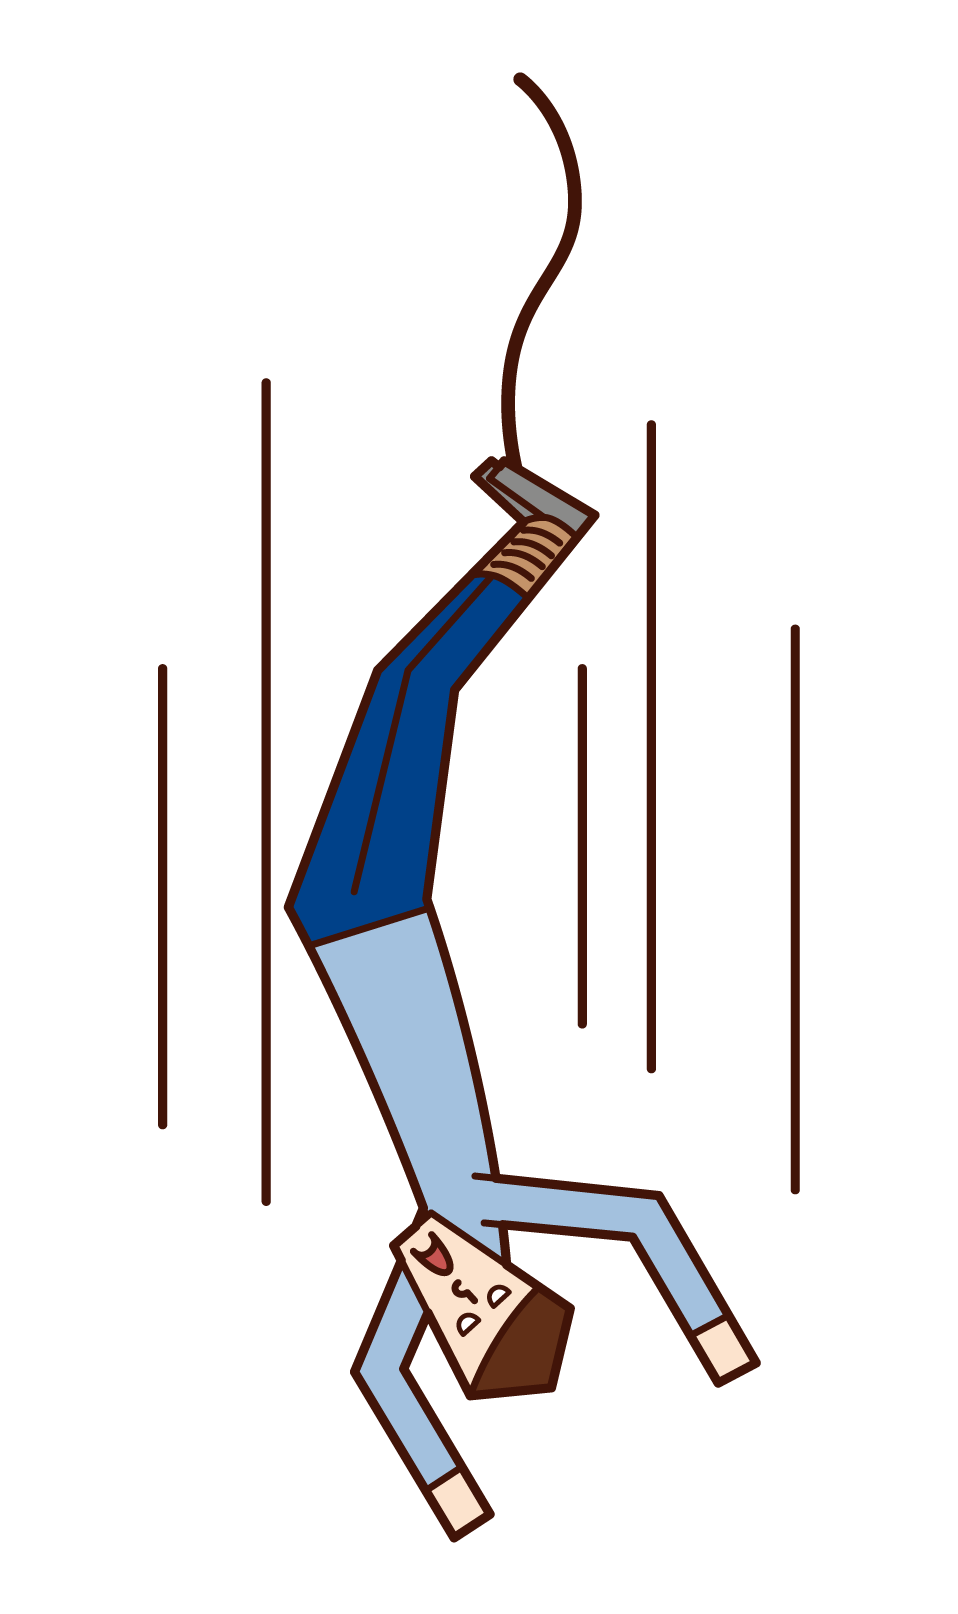 バンジージャンプをする人 男性 のイラスト フリーイラスト素材 Kukukeke ククケケ